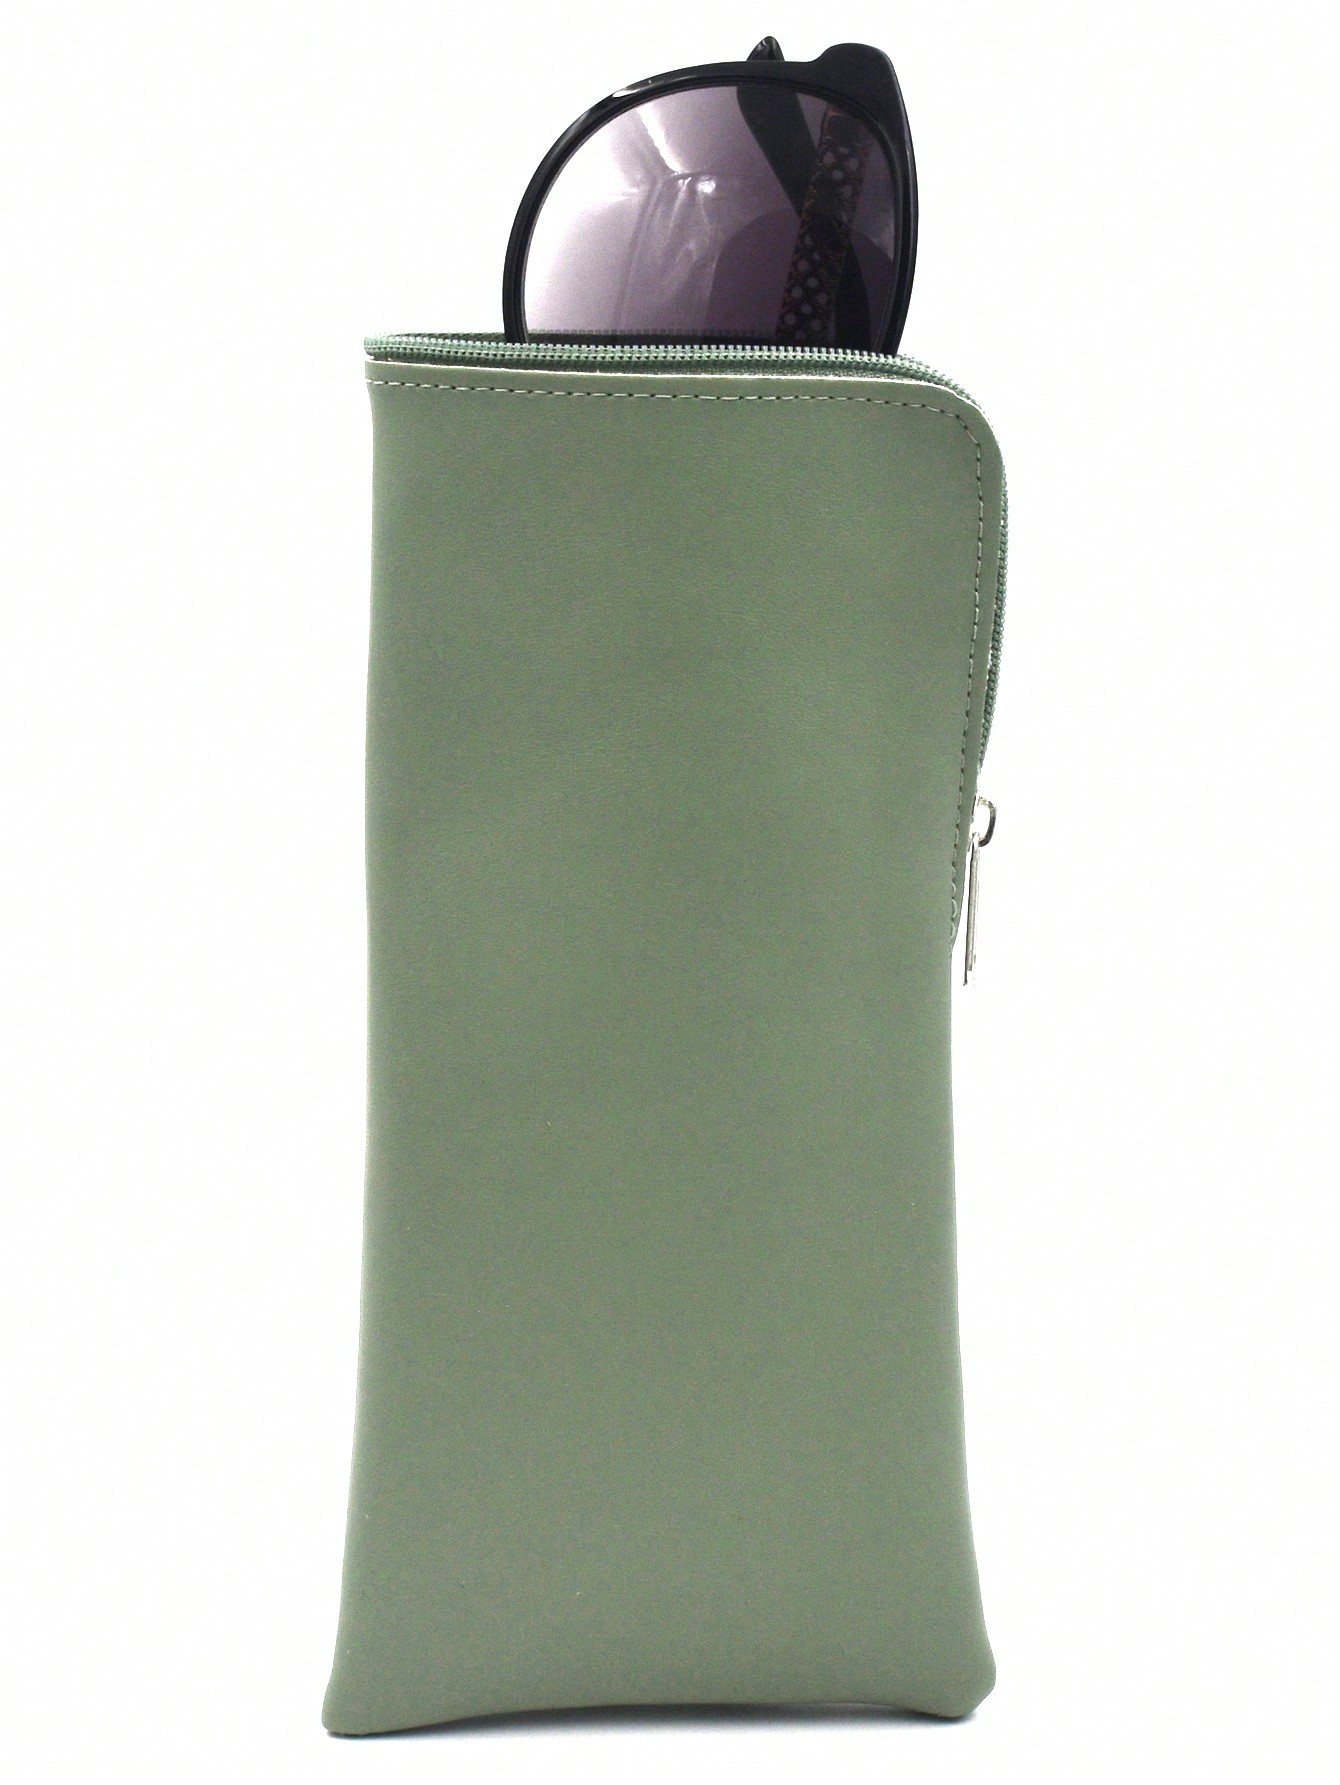 1 предмет из искусственной кожи, зеленый подвесная сумка для одежды одежды костюма пальто пылезащитный чехол сумка для домашнего хранения чехол сумка органайзер шкаф подвесн